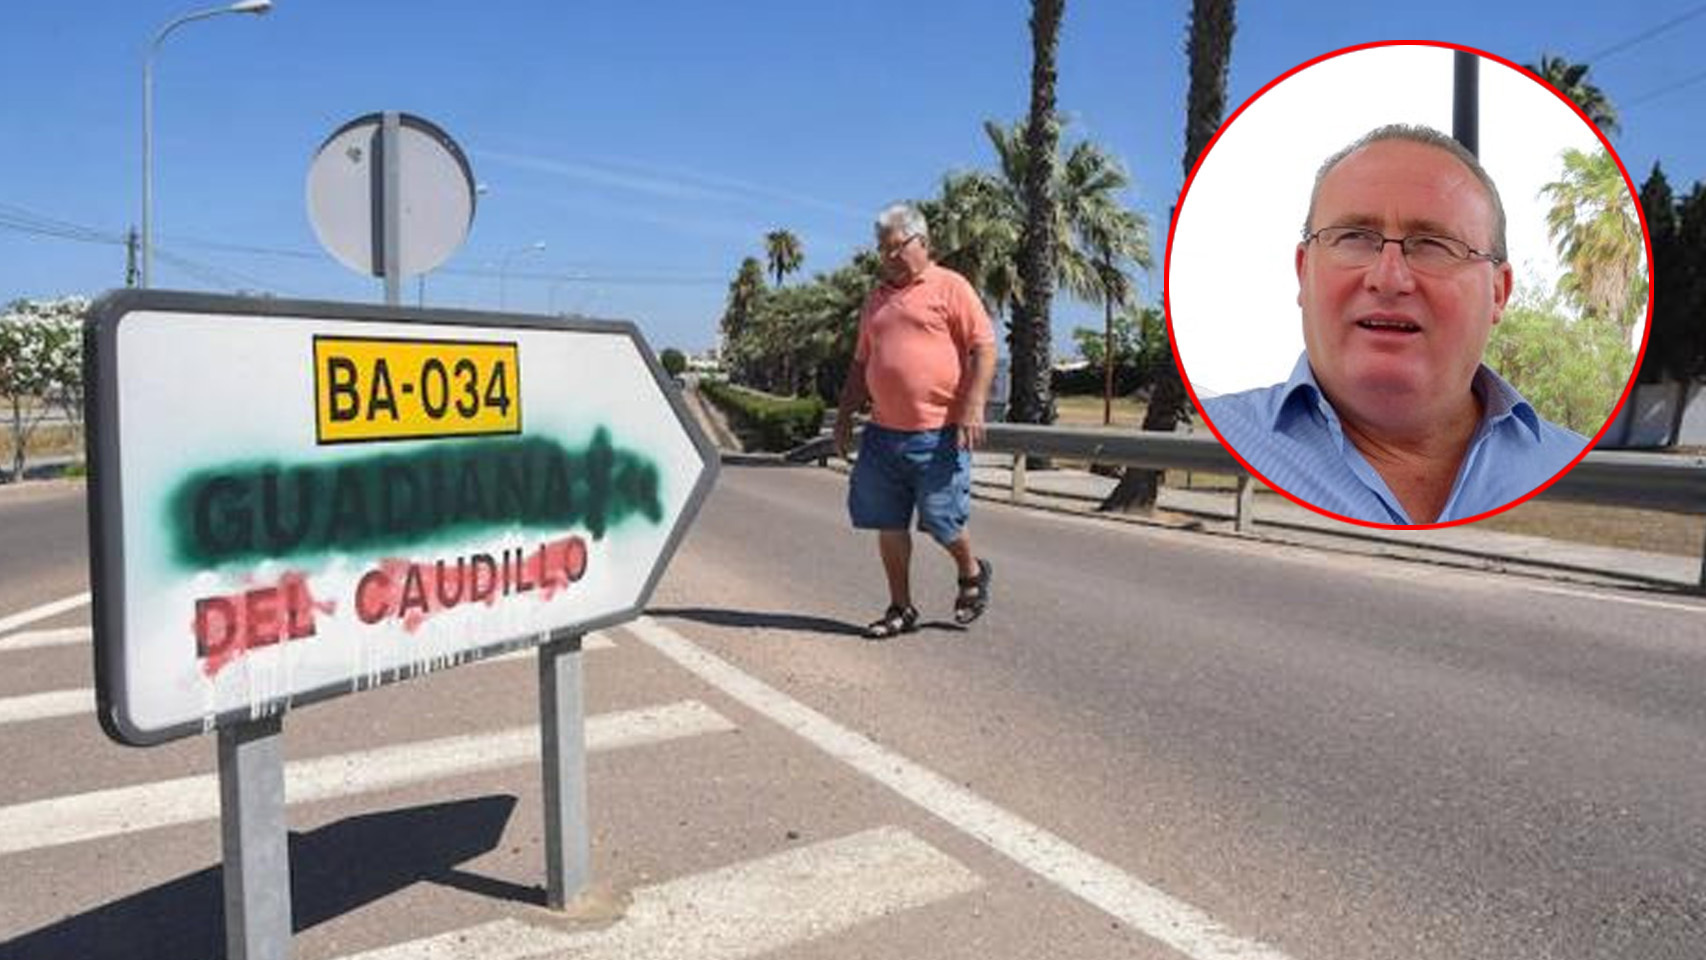 Un hombre pasa por delante de una señal que indica hacia Guadiana del Caudillo (Badajoz).